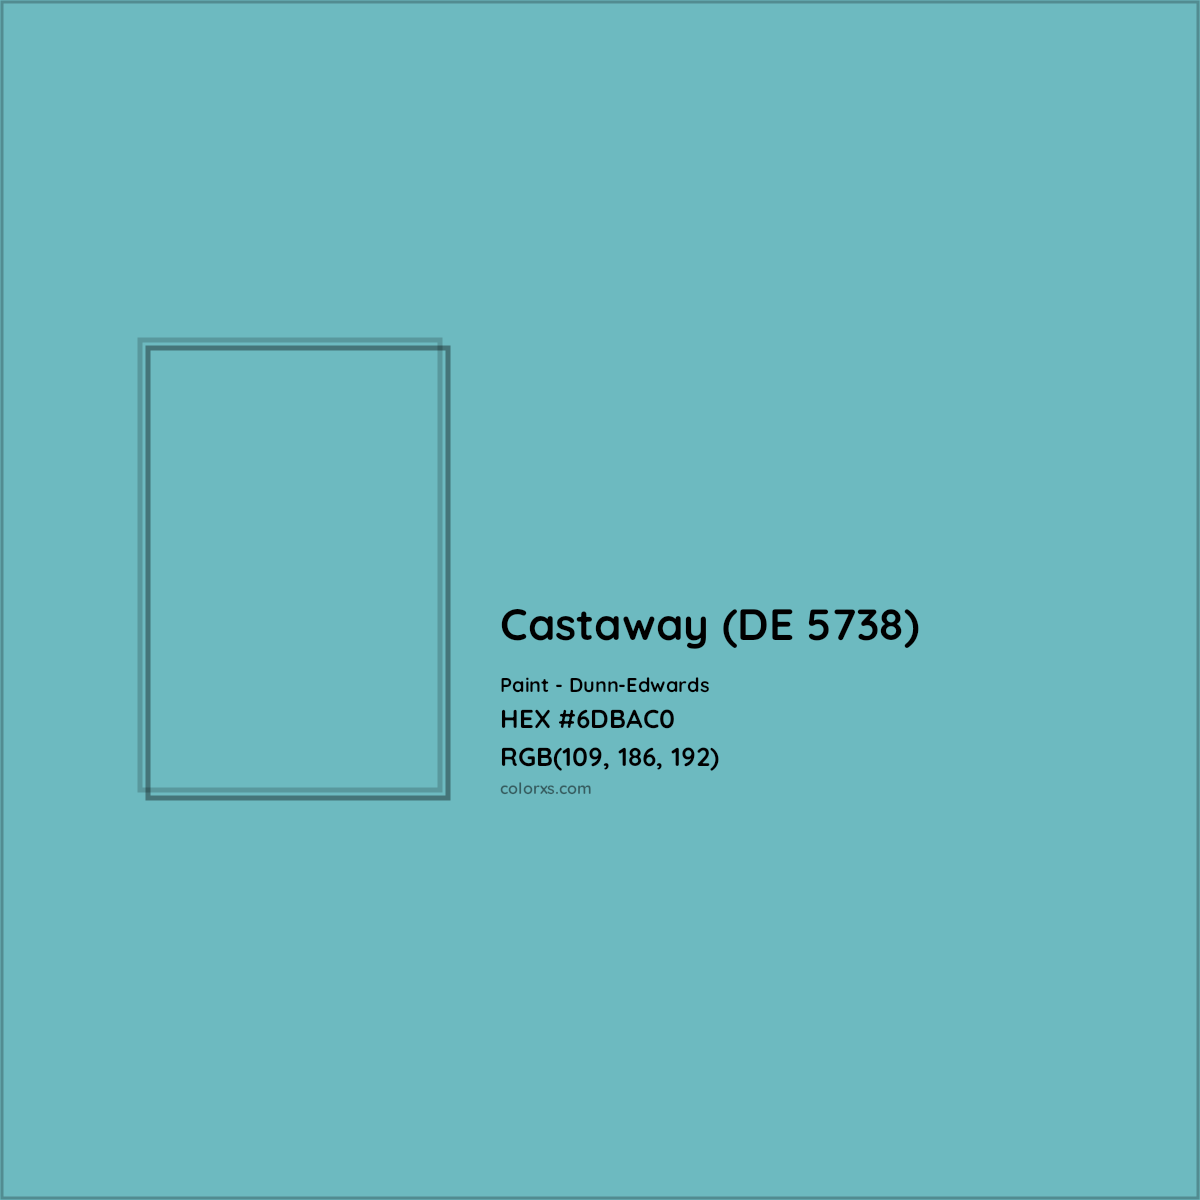 HEX #6DBAC0 Castaway (DE 5738) Paint Dunn-Edwards - Color Code